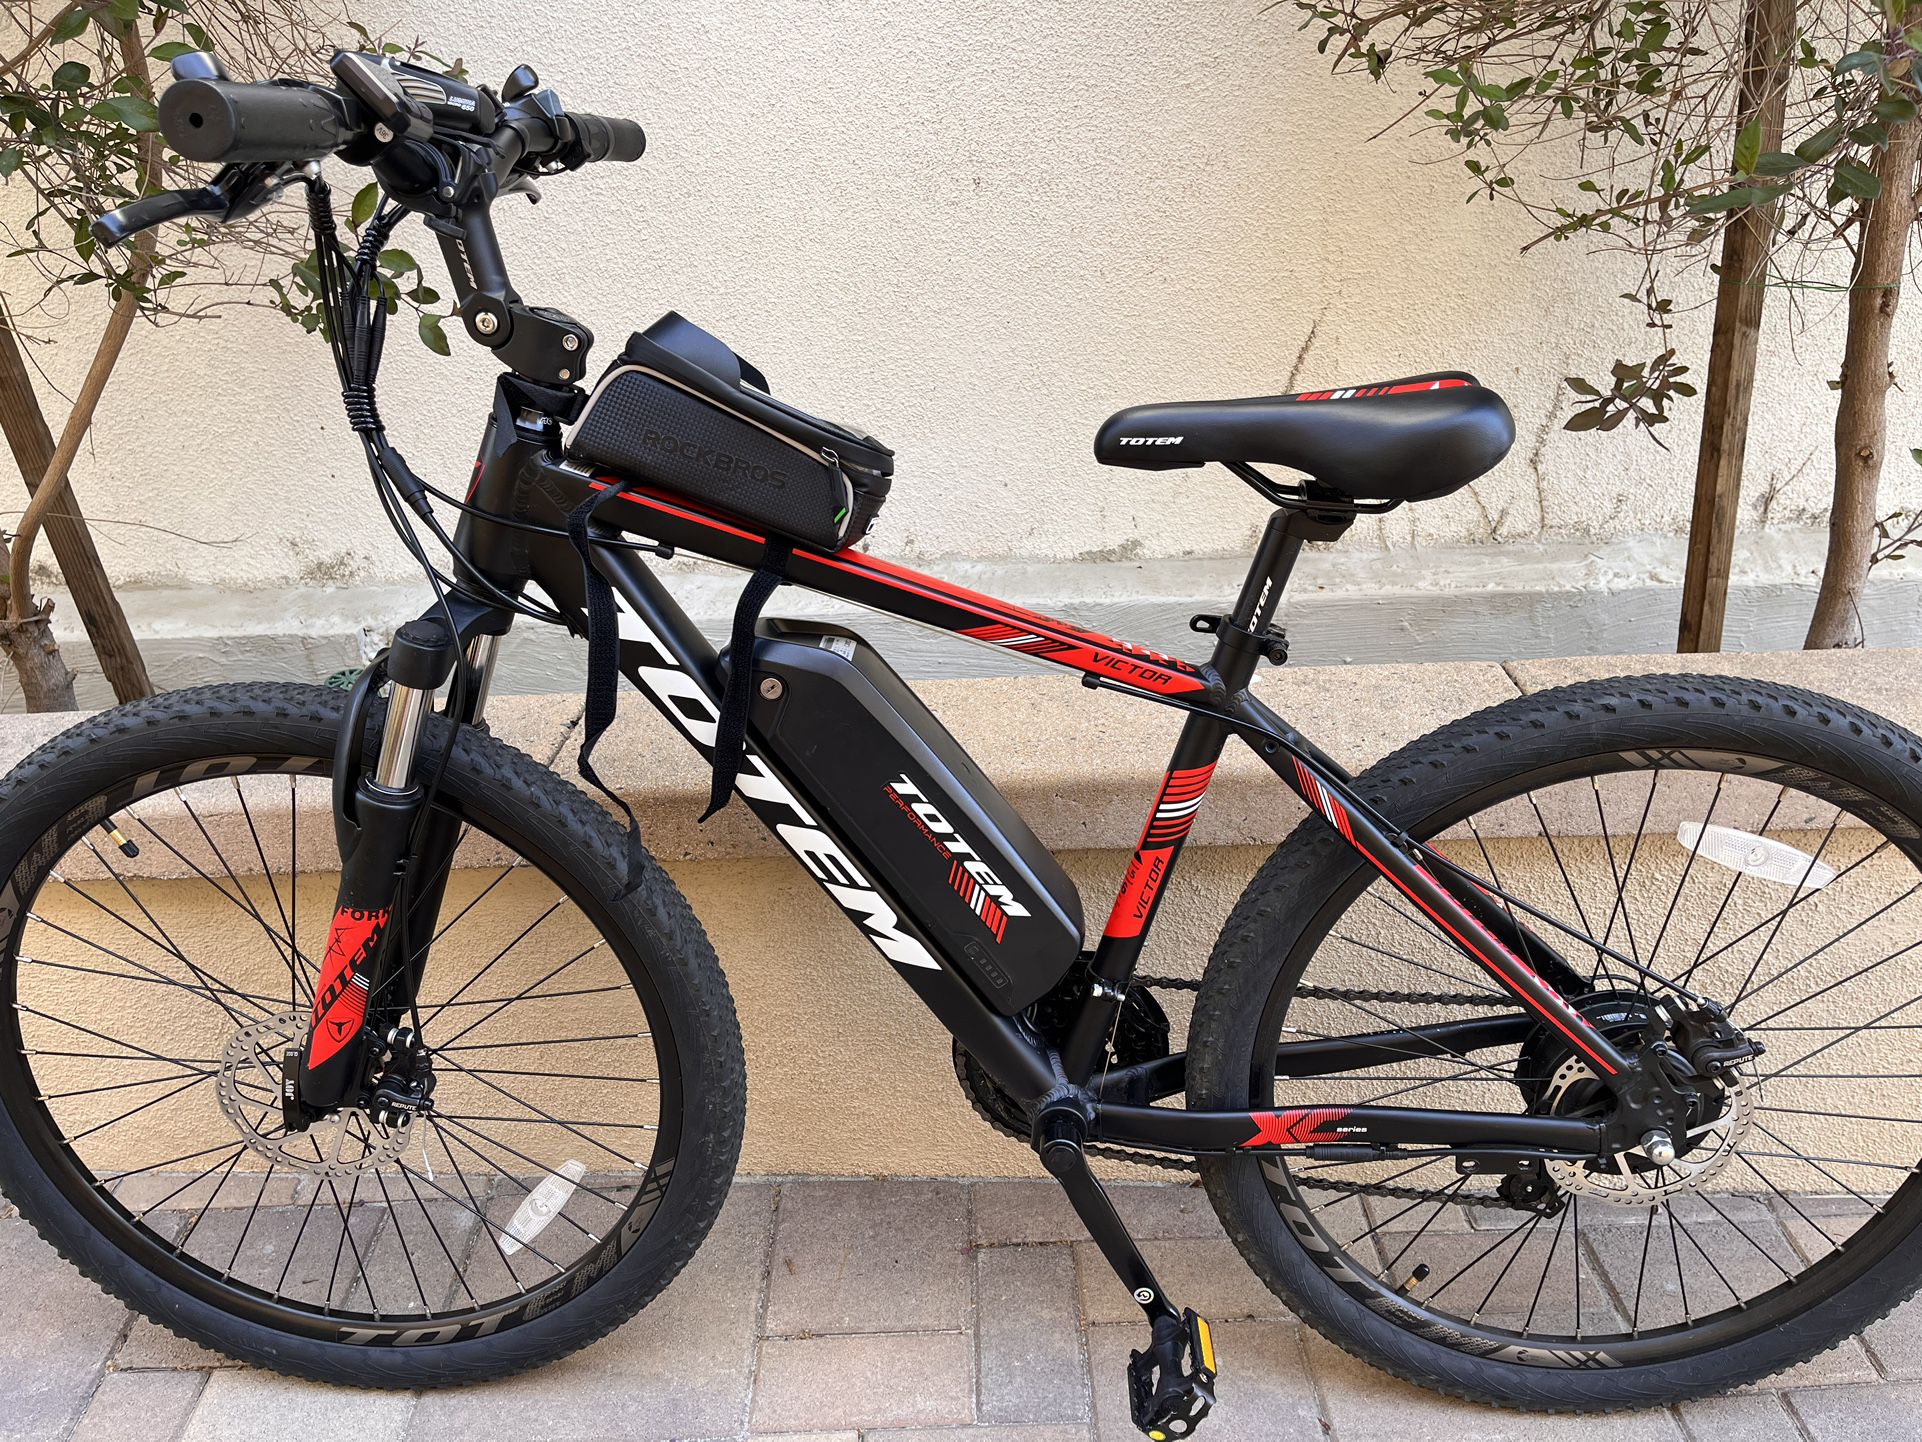 Totem Electric Bike- Barely Used for Sale in Rancho Santa Margarita, CA ...